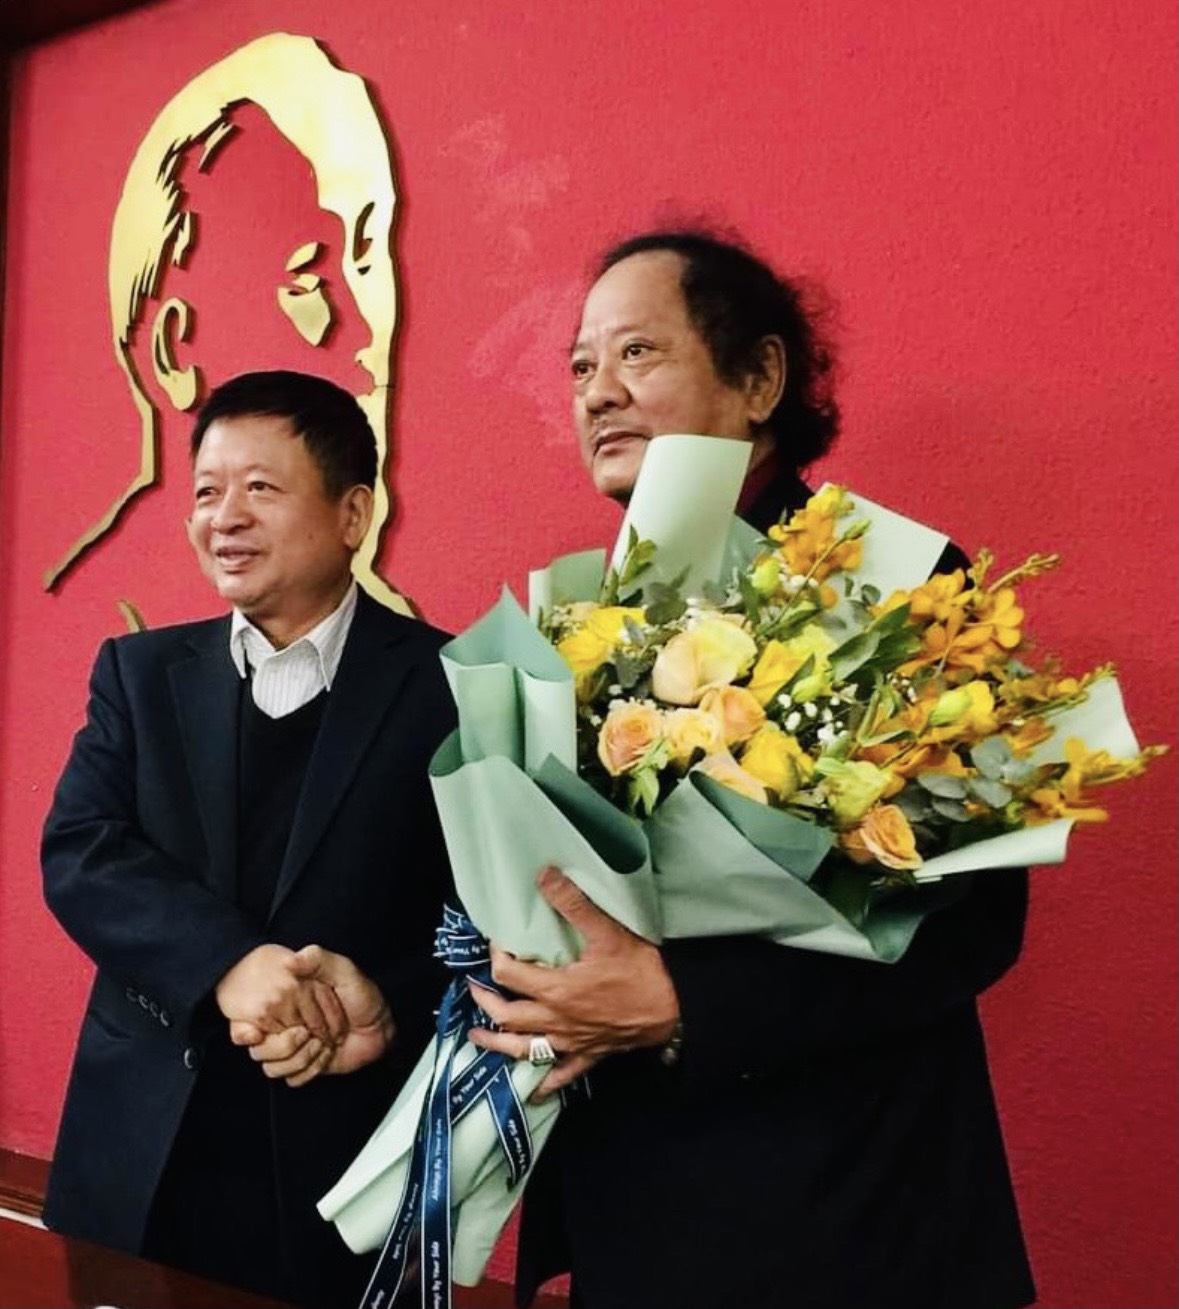 Bạn có muốn tìm hiểu thêm về Chủ tịch hội điện ảnh Việt Nam - một nhân vật quan trọng đã góp phần ủng hộ sự phát triển của điện ảnh Việt Nam? Hãy đến xem hình ảnh để khám phá những sự đóng góp của ông.